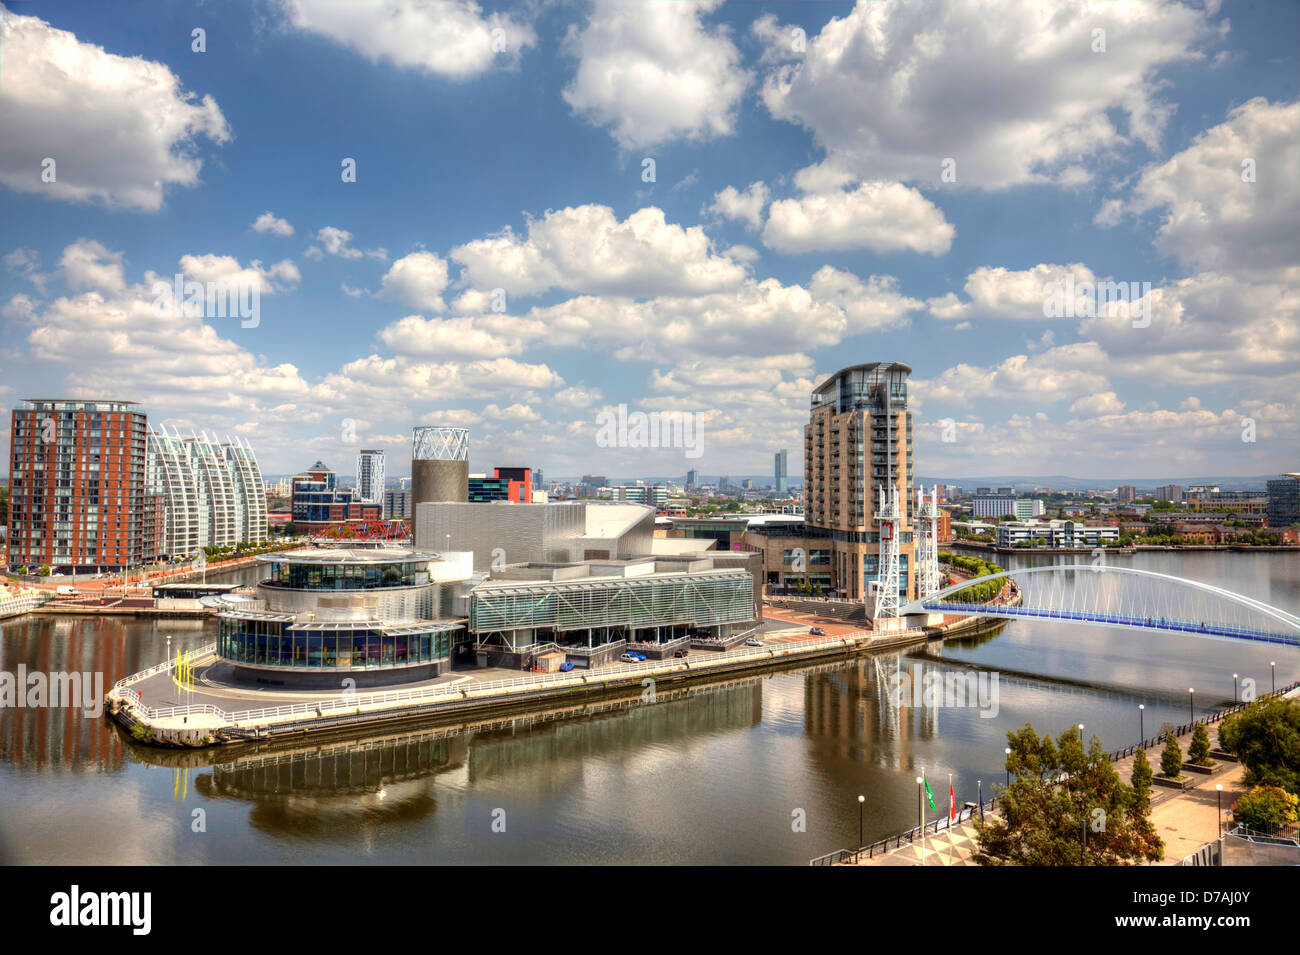 Vue panoramique de Manchester à Salford Quays, England, UK Banque D'Images